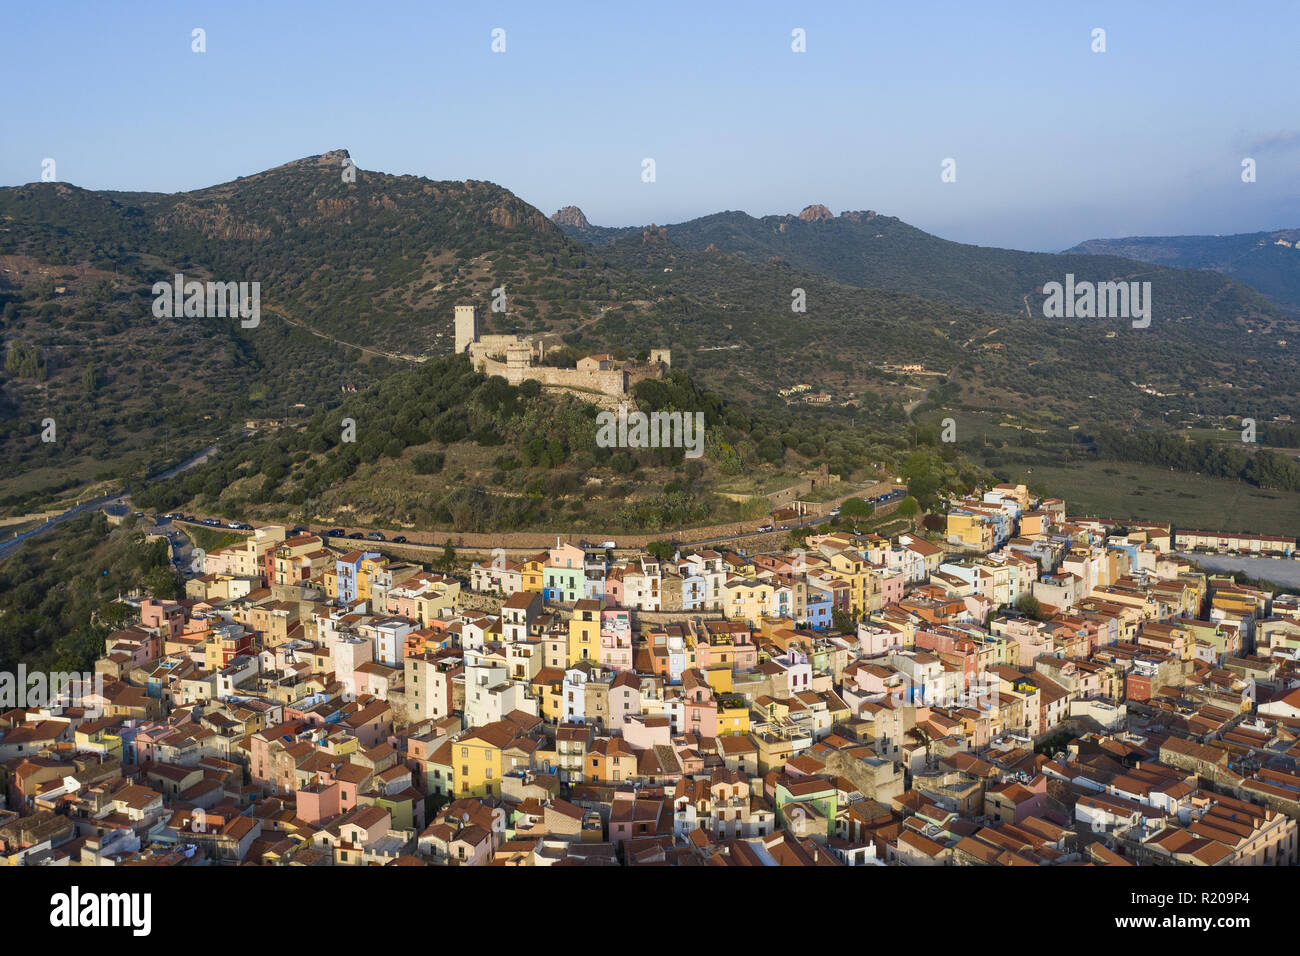 Vista aerea del bellissimo borgo di Bosa con case colorate. Bosa è situata nel nord-ovest della Sardegna, Italia. Foto Stock